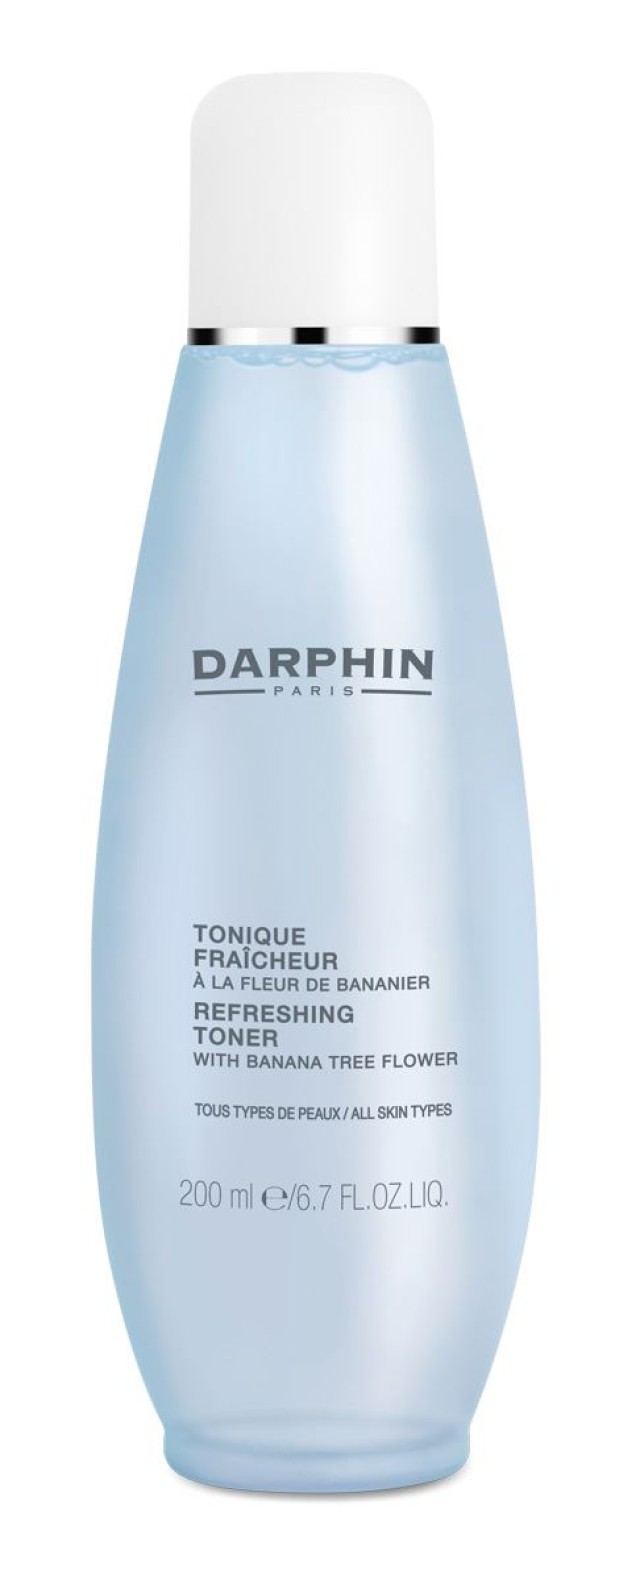 DARPHIN Refreshing Toner With Banana tree flower 200ml